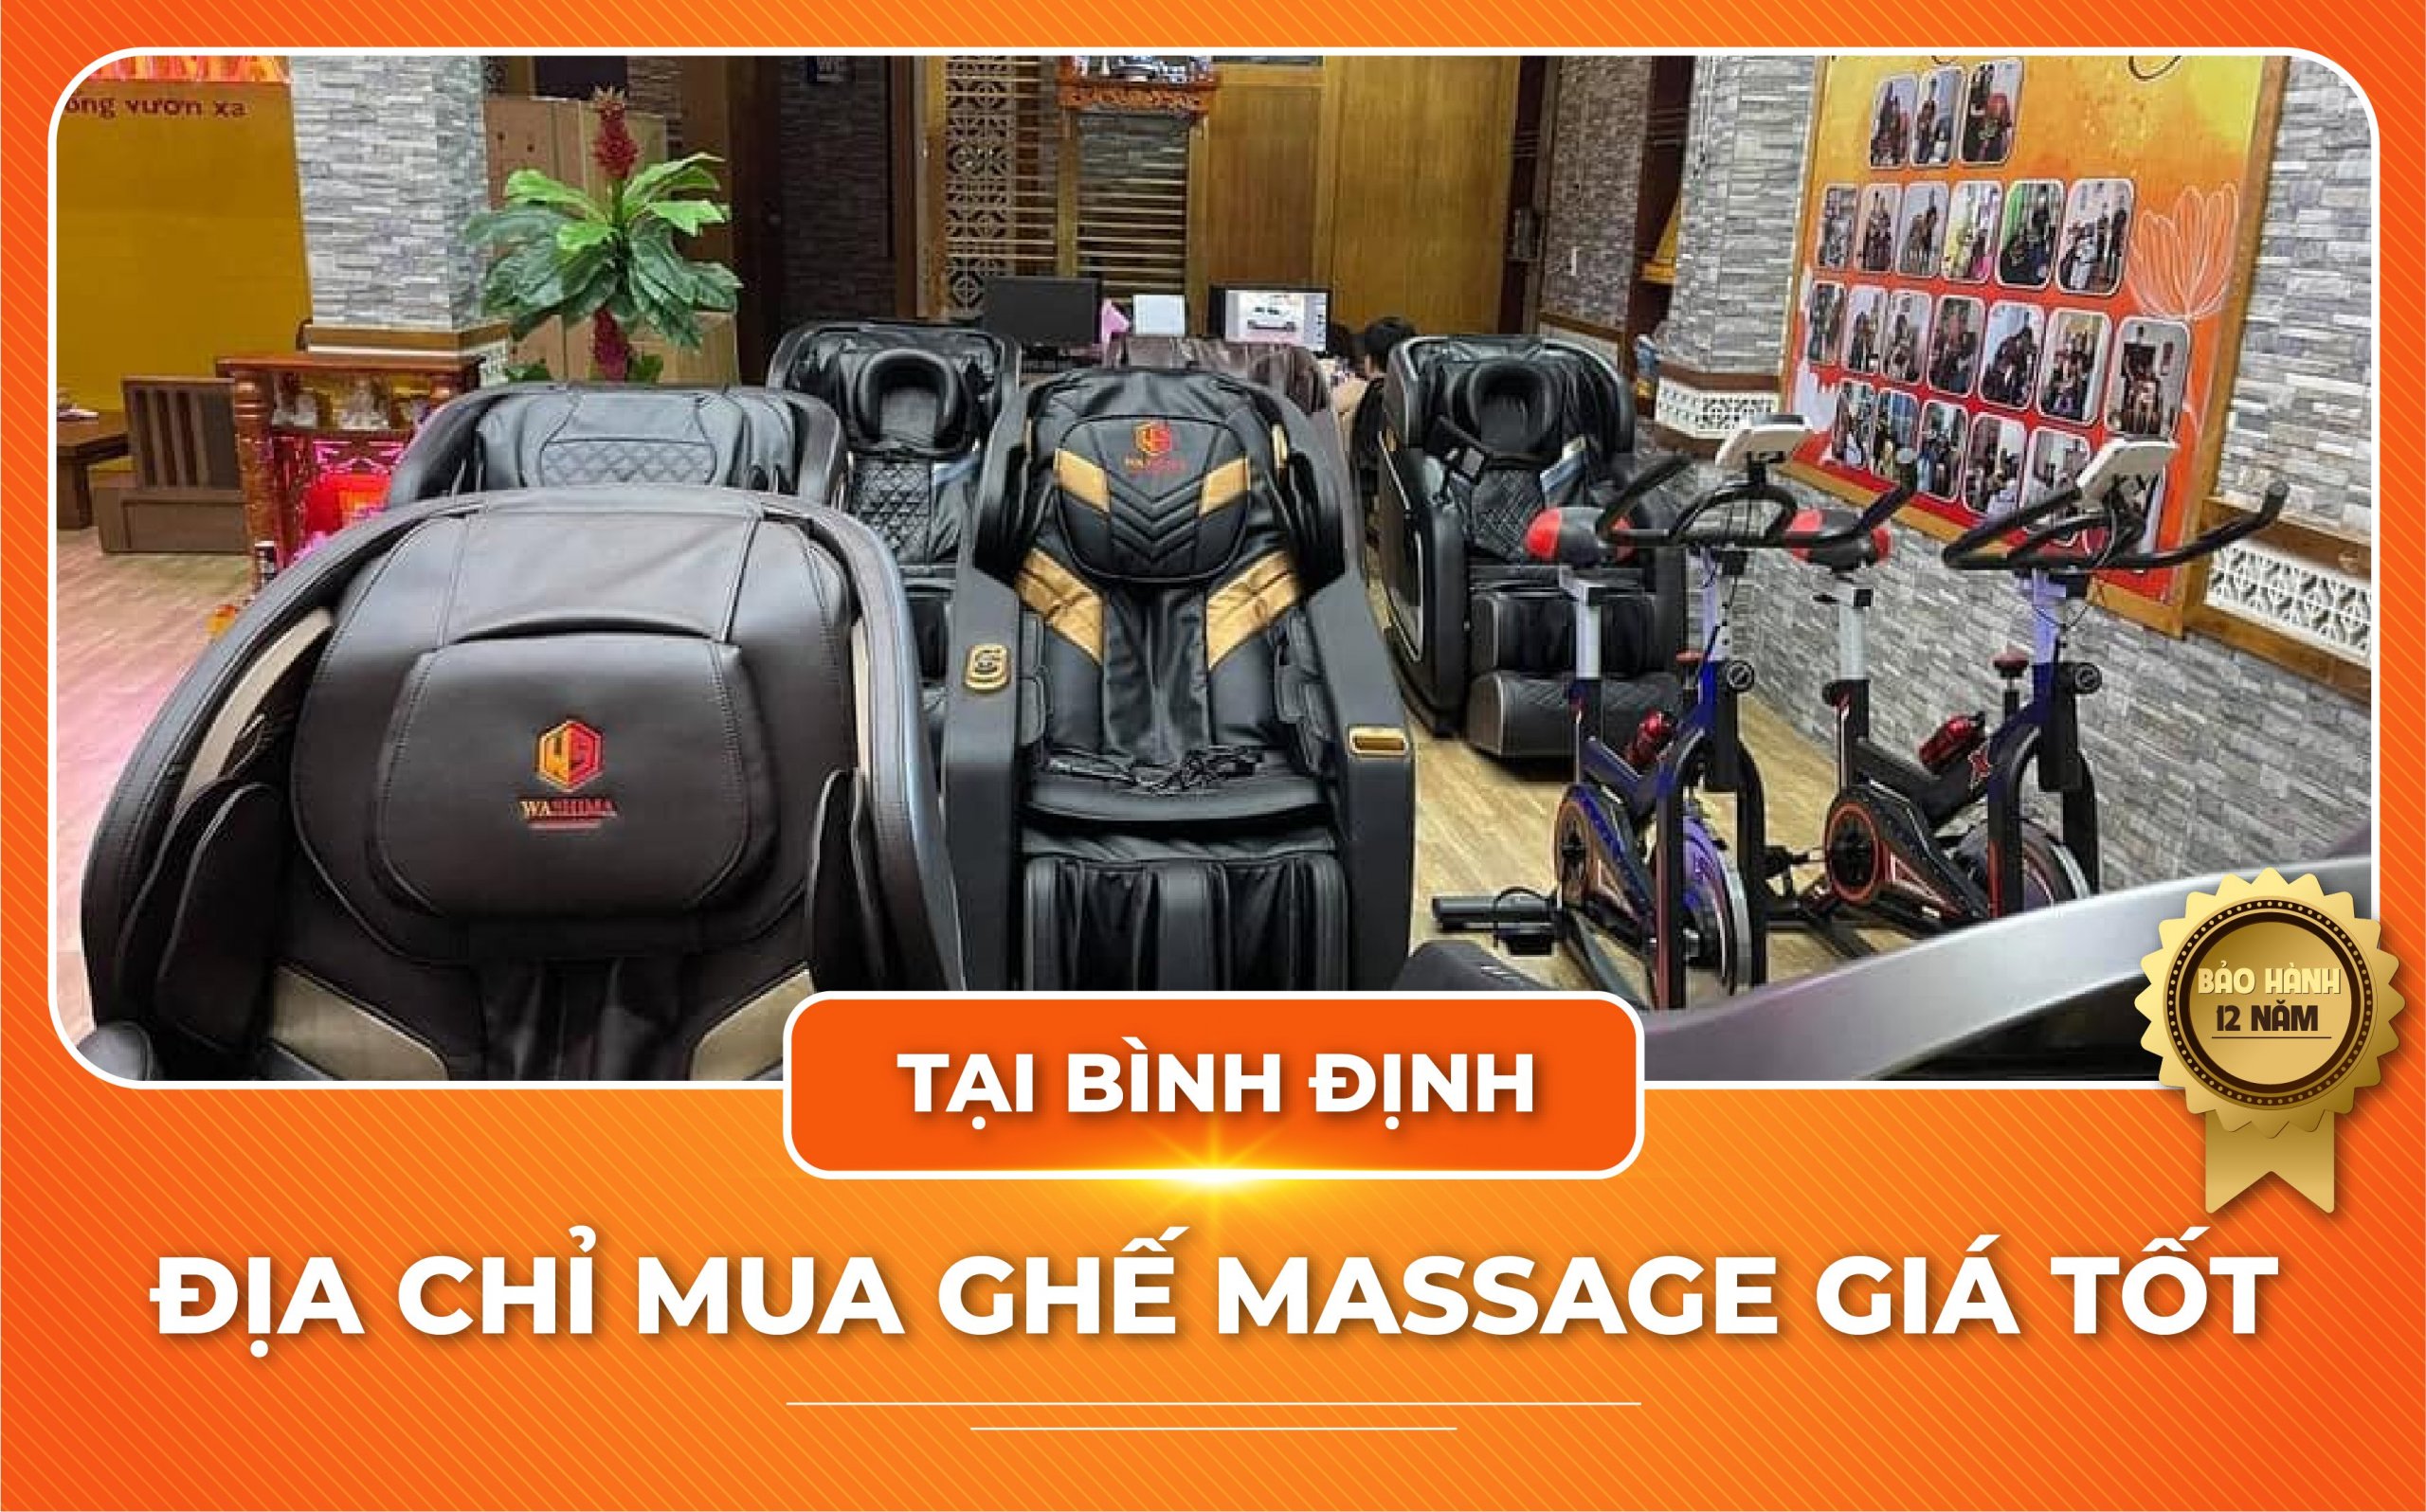 Đại lý ghế massage Washima tại Bình Định